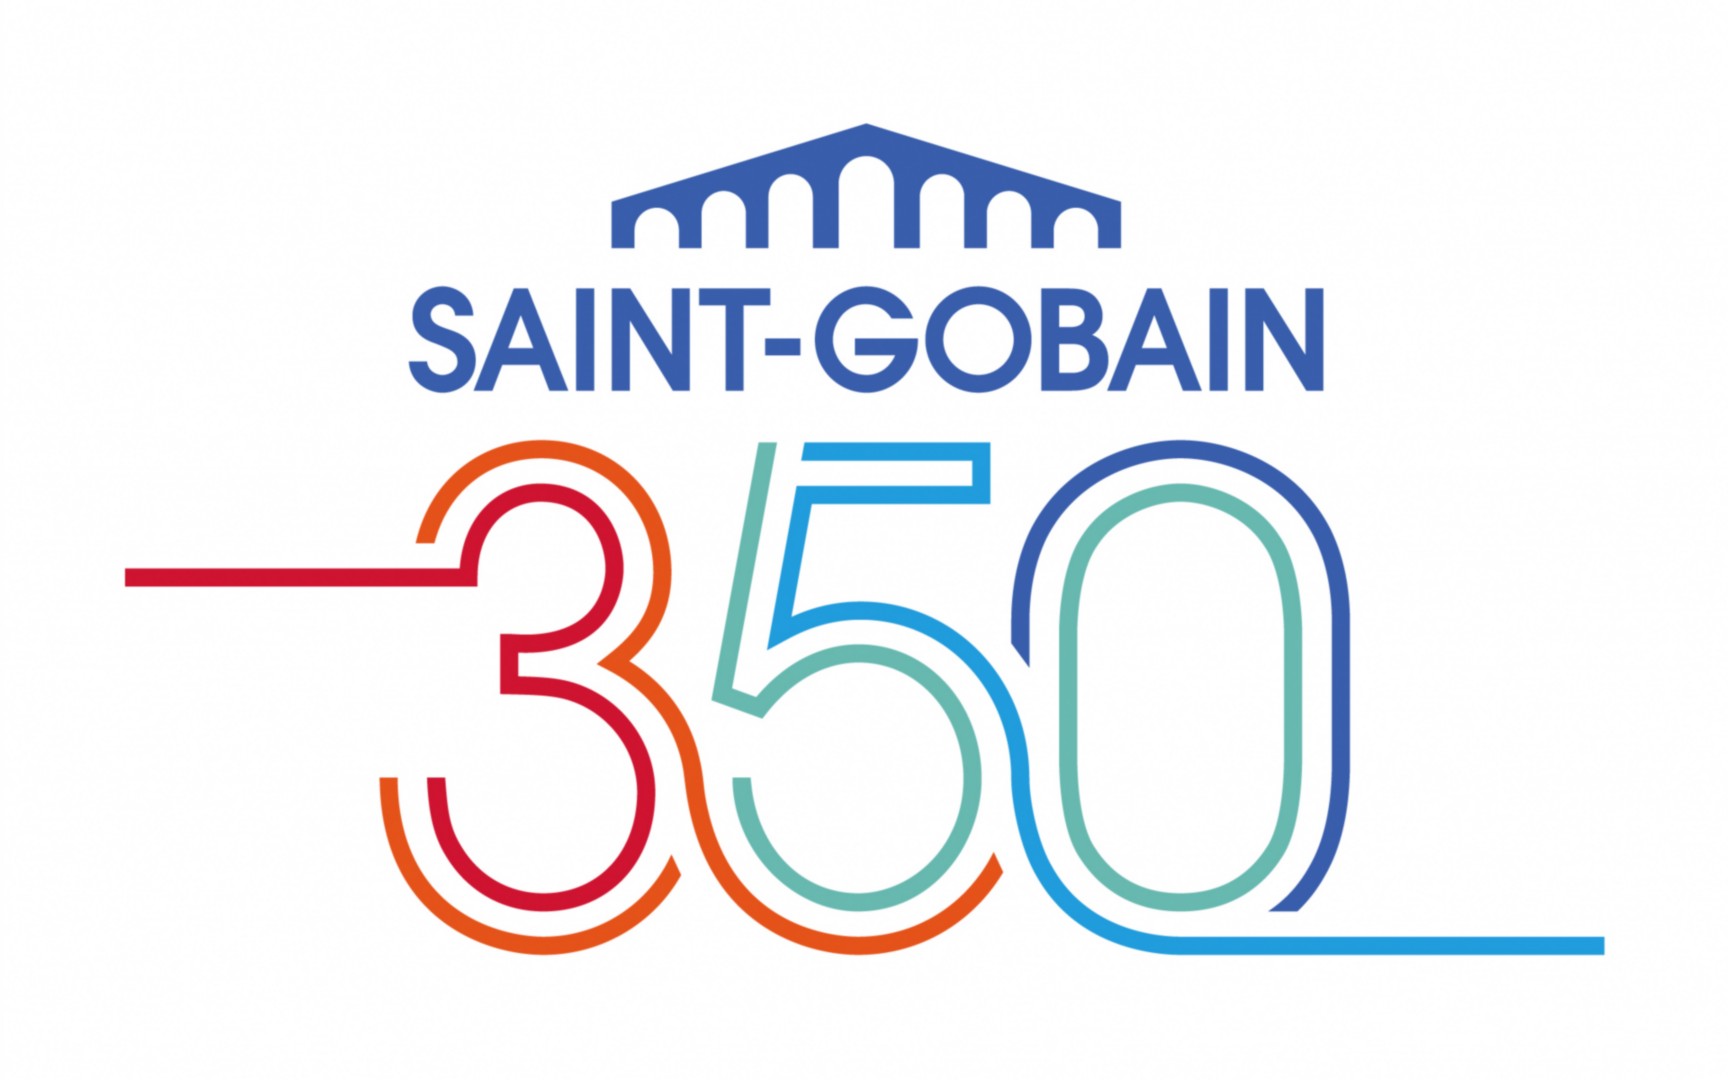 SaintGobain świętuje 350lecie